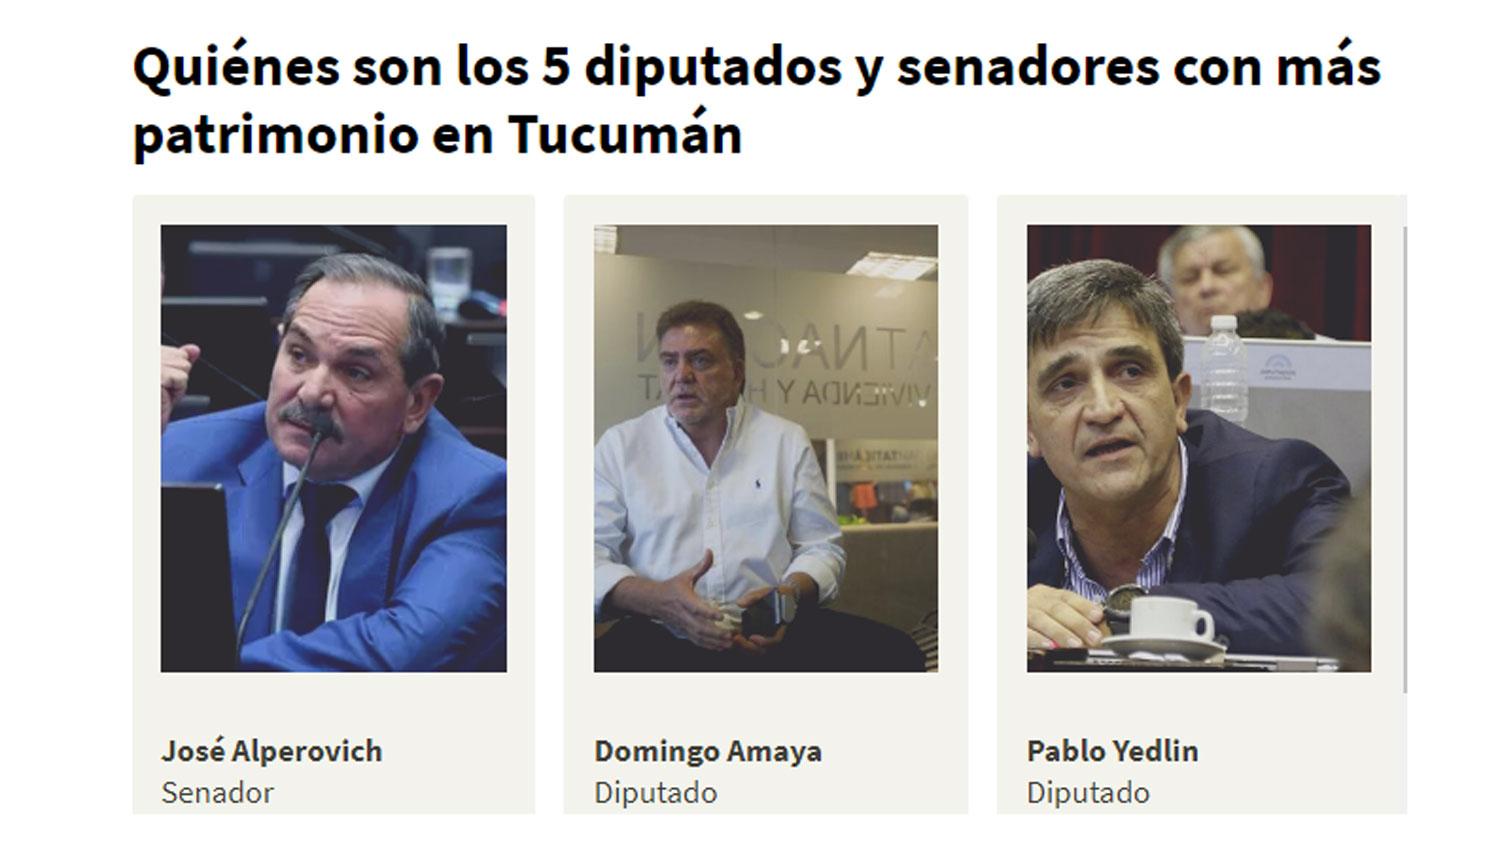 EL RÁNKING. Alperovich, Amaya y Yedlin lideraron el listado de tucumanos con más patrimomio en el Congreso.